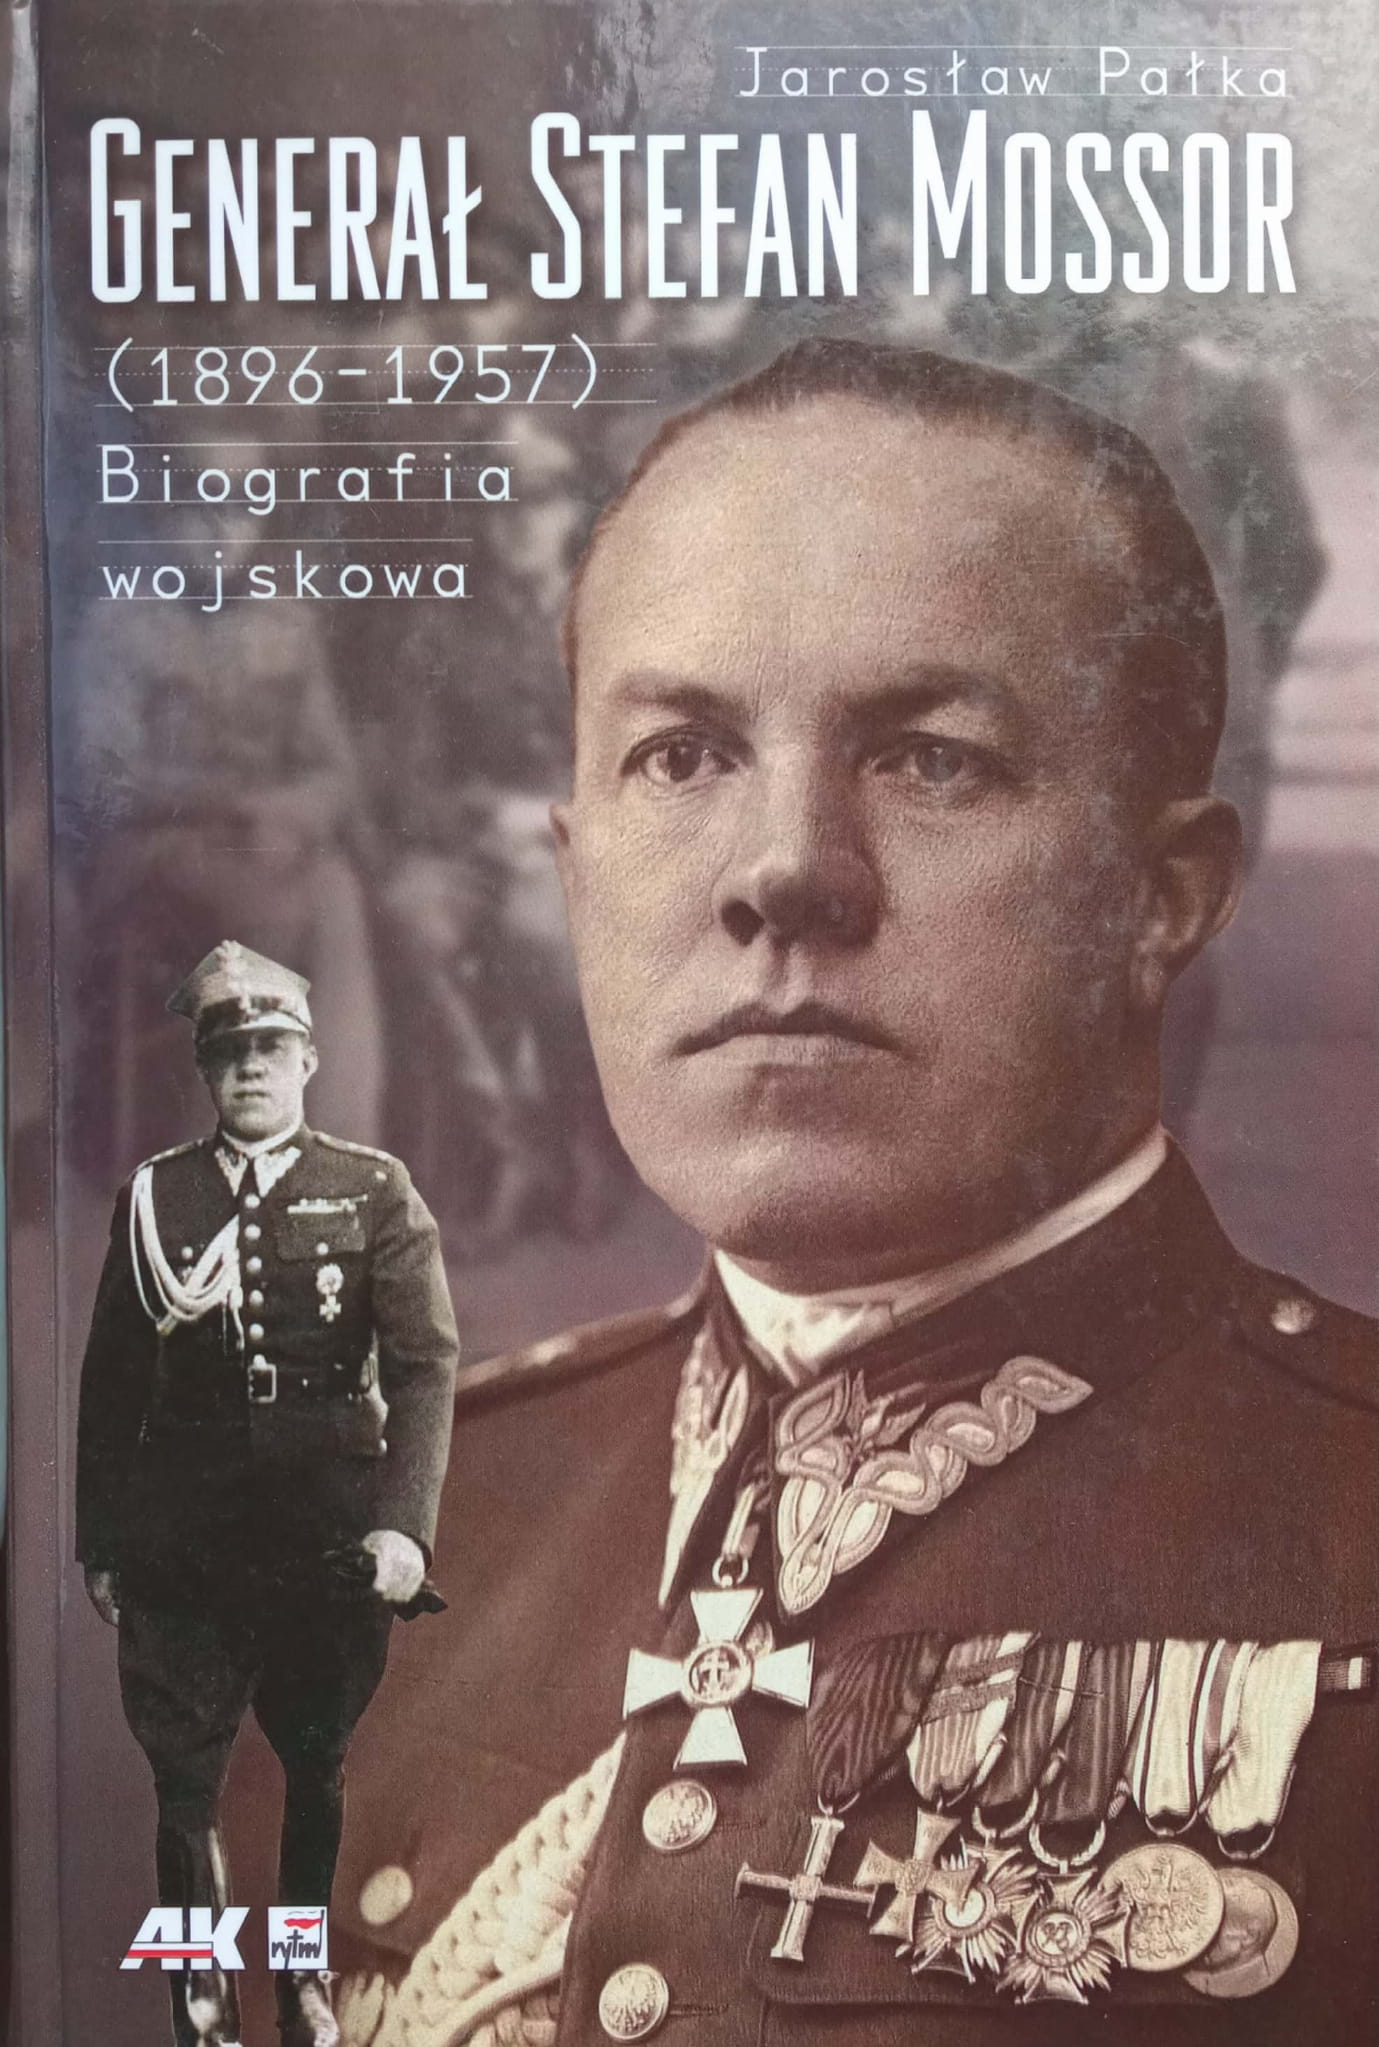 Generał Stefan Mossor (1896-1957) Biografia wojskowa (J.Pałka)